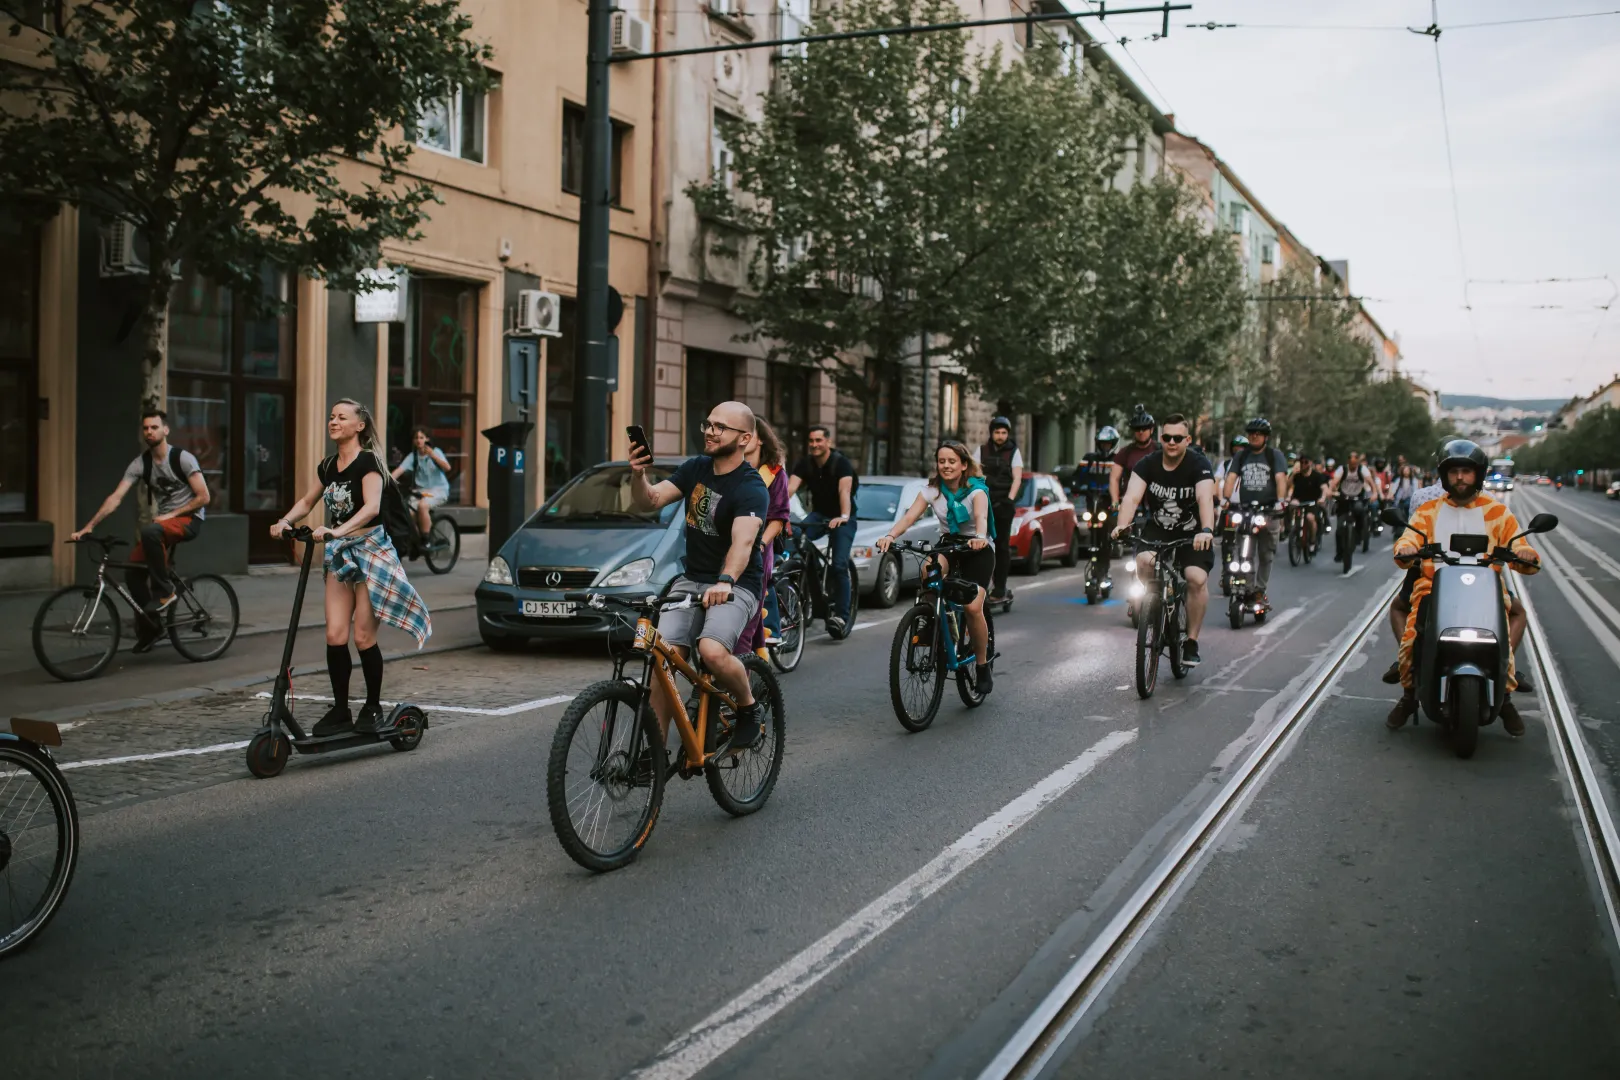 A mintegy két órán át tartó parádéhoz menet közben
is lehetett csatlakozni, a feltétel csak a
kerékpáros közlekedés szabályainak a betartása volt. Fotó: Moldvai Anikó